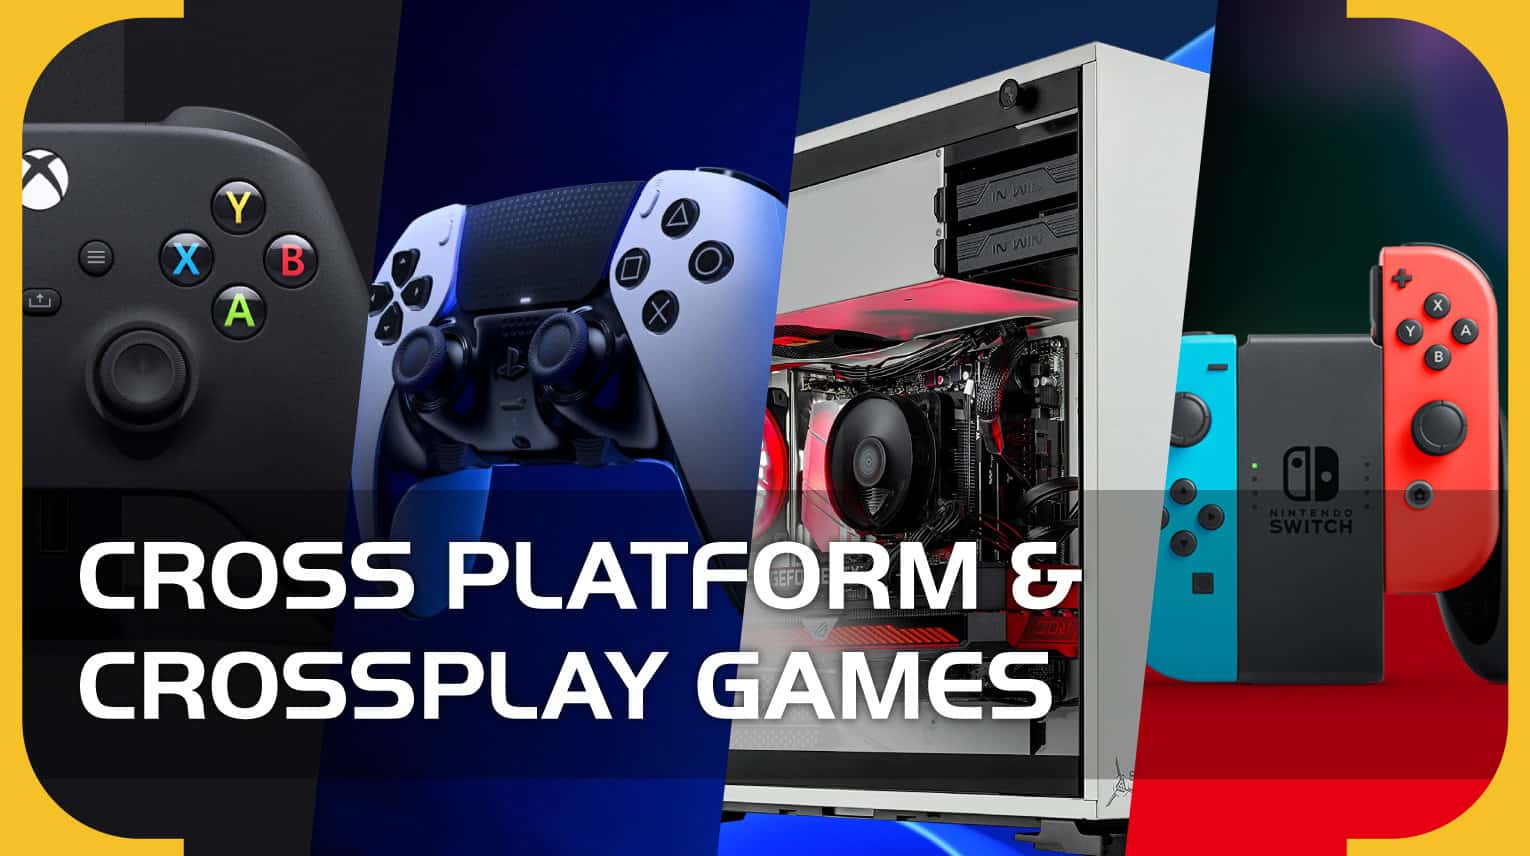 Følsom Taktil sans udvande Every Cross Platform & Crossplay Game (October 2022) - PS5, Xbox Series X,  PC, PS4, Xbox One, Nintendo Switch) - VideoGamer.com